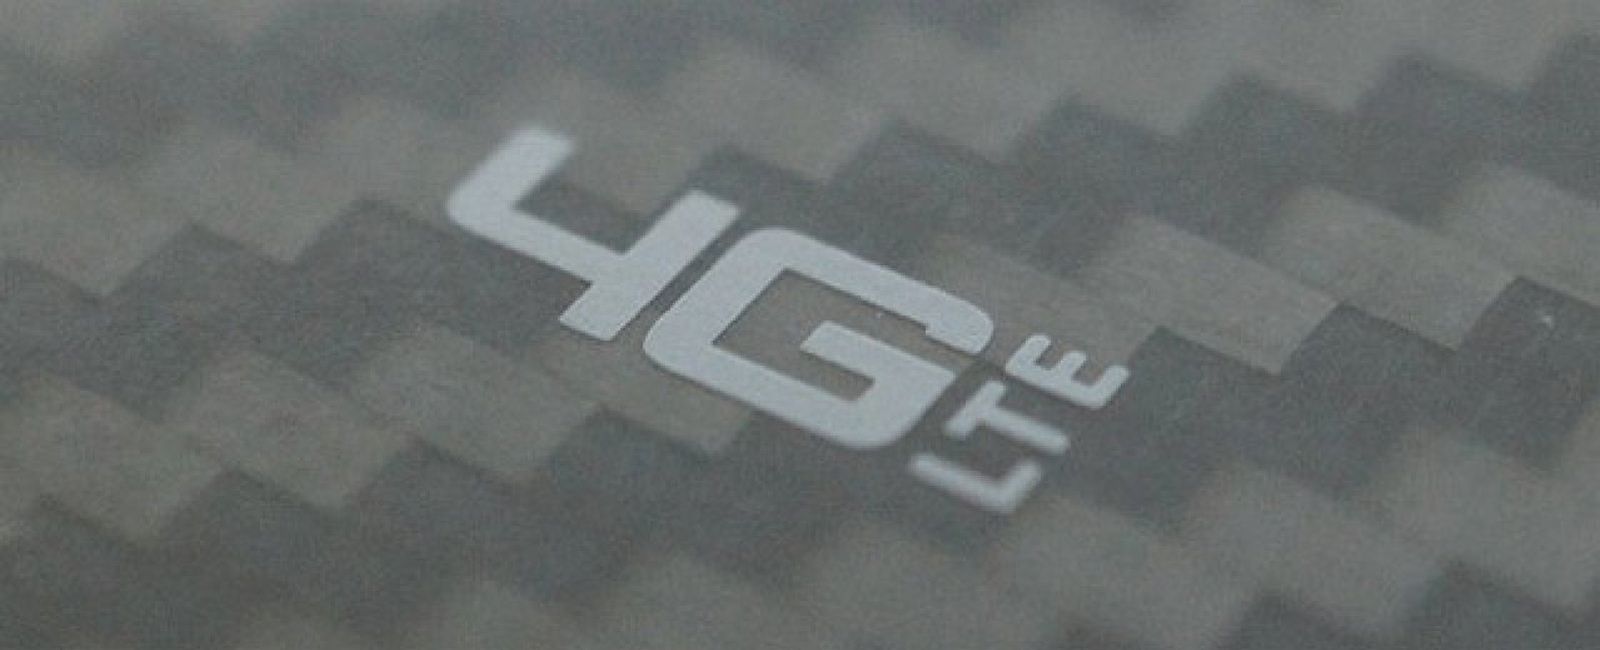 Foto: Yoigo traerá el 4G este verano sin coste adicional